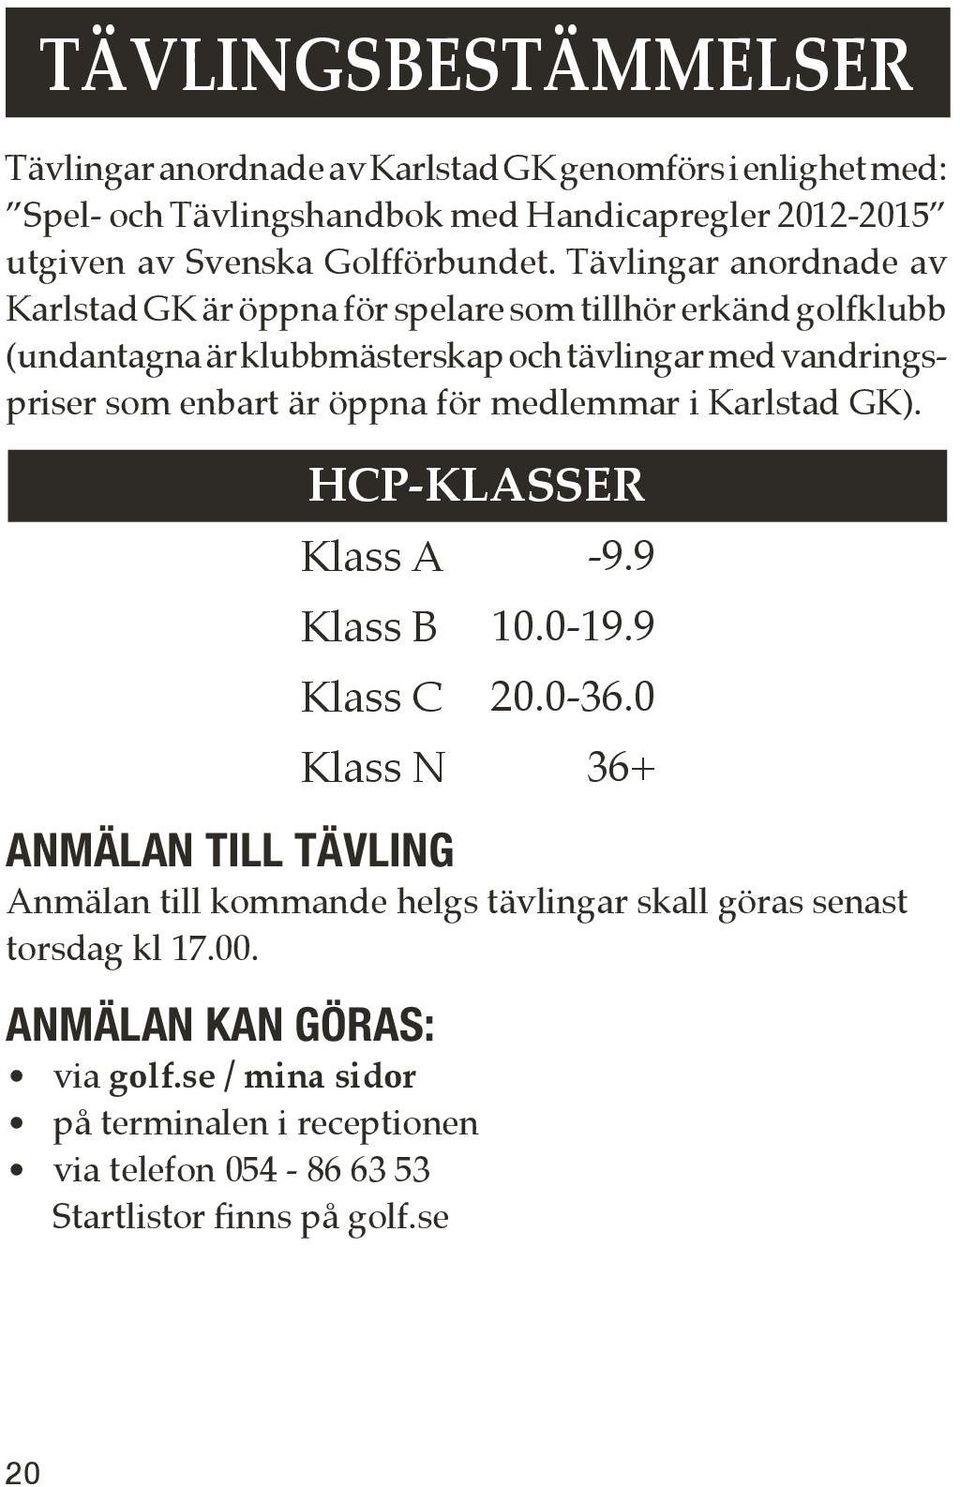 Tävlingar anordnade av Karlstad GK är öppna för spelare som tillhör erkänd golfklubb (undantagna är klubbmästerskap och tävlingar med vandringspriser som enbart är